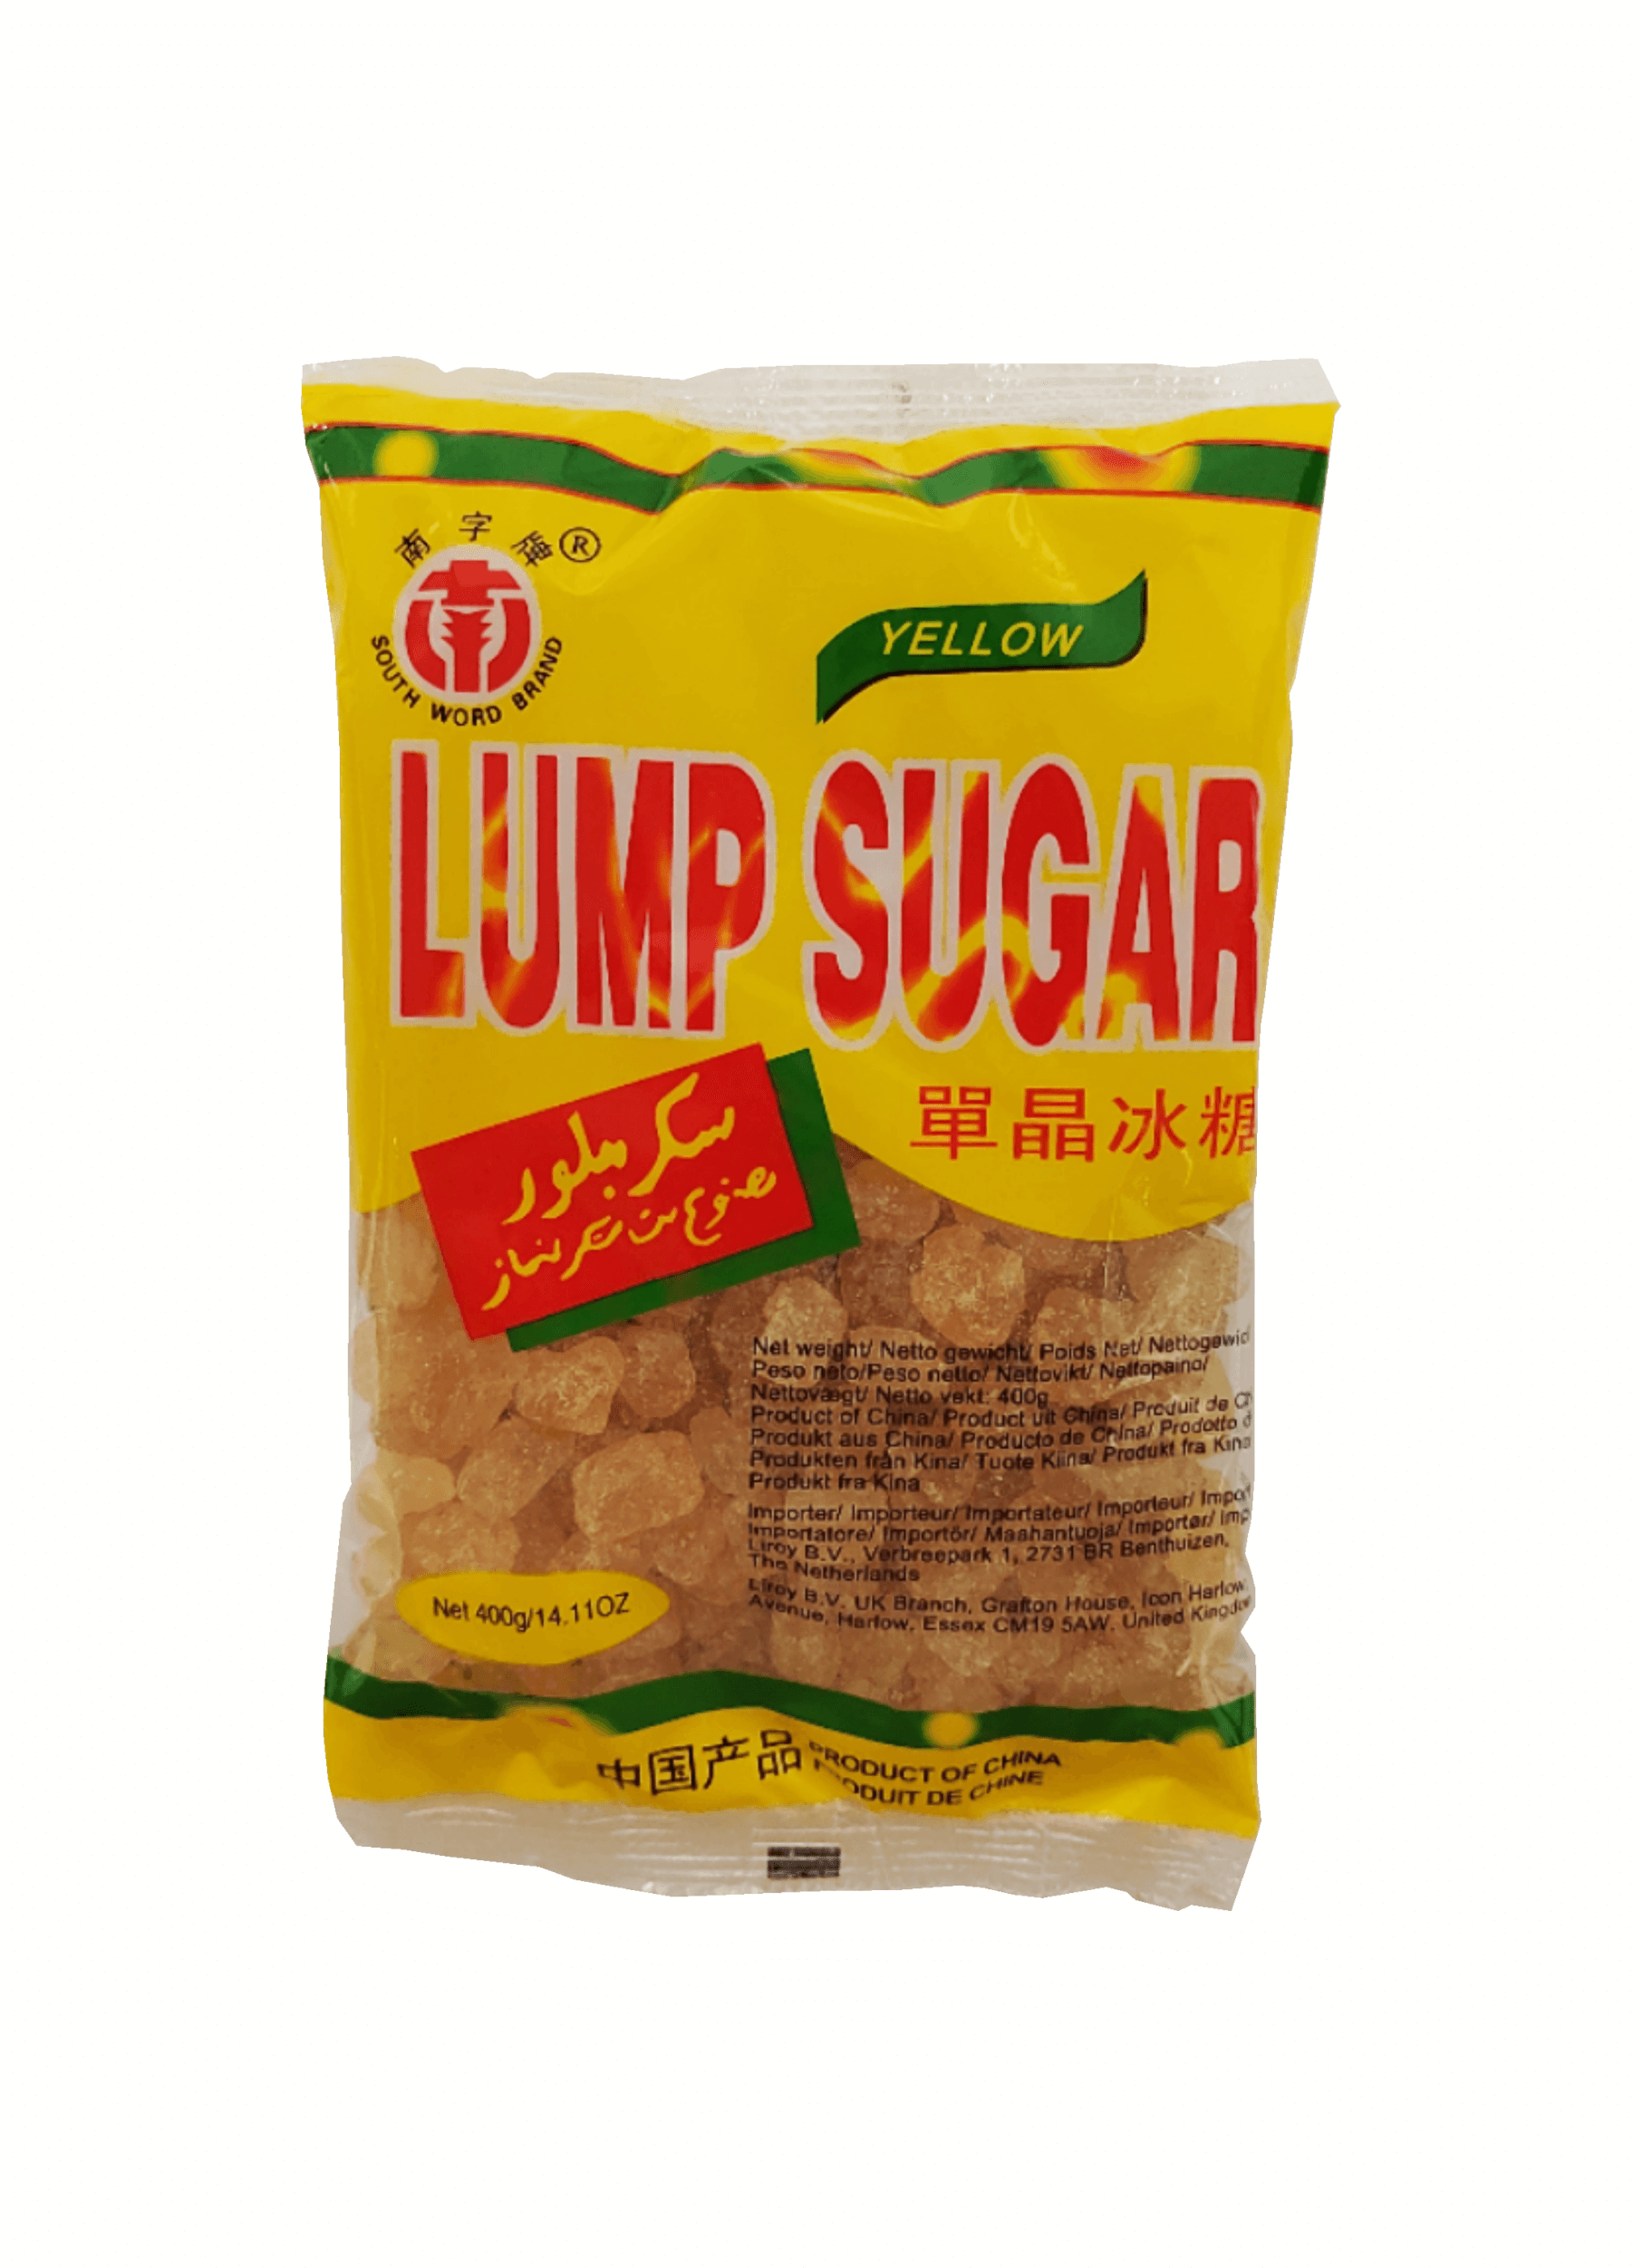 Sugar Crystal Yellow 400g Lump China